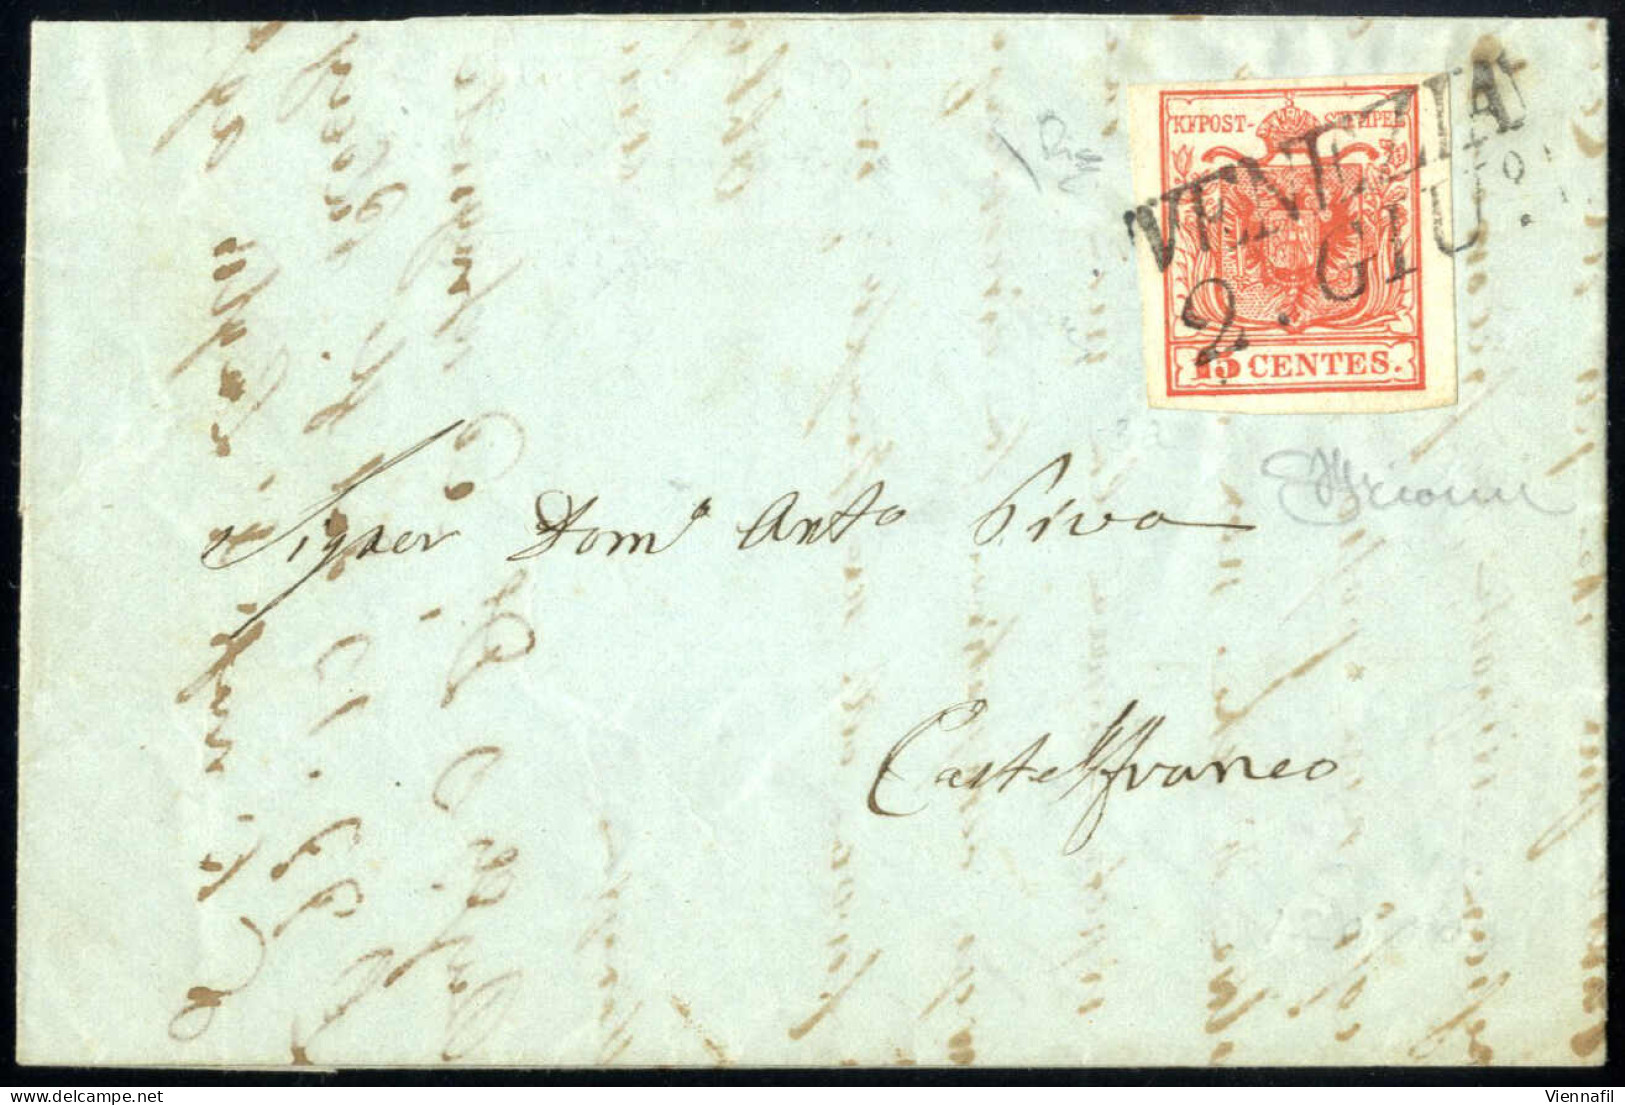 Cover 1850, Lettera Da Venezia Del 2.6 Secondo Giorno D'uso Per Castelfranco Affrancata Con 15 C. Rosso I Tipo Prima Tir - Lombardy-Venetia